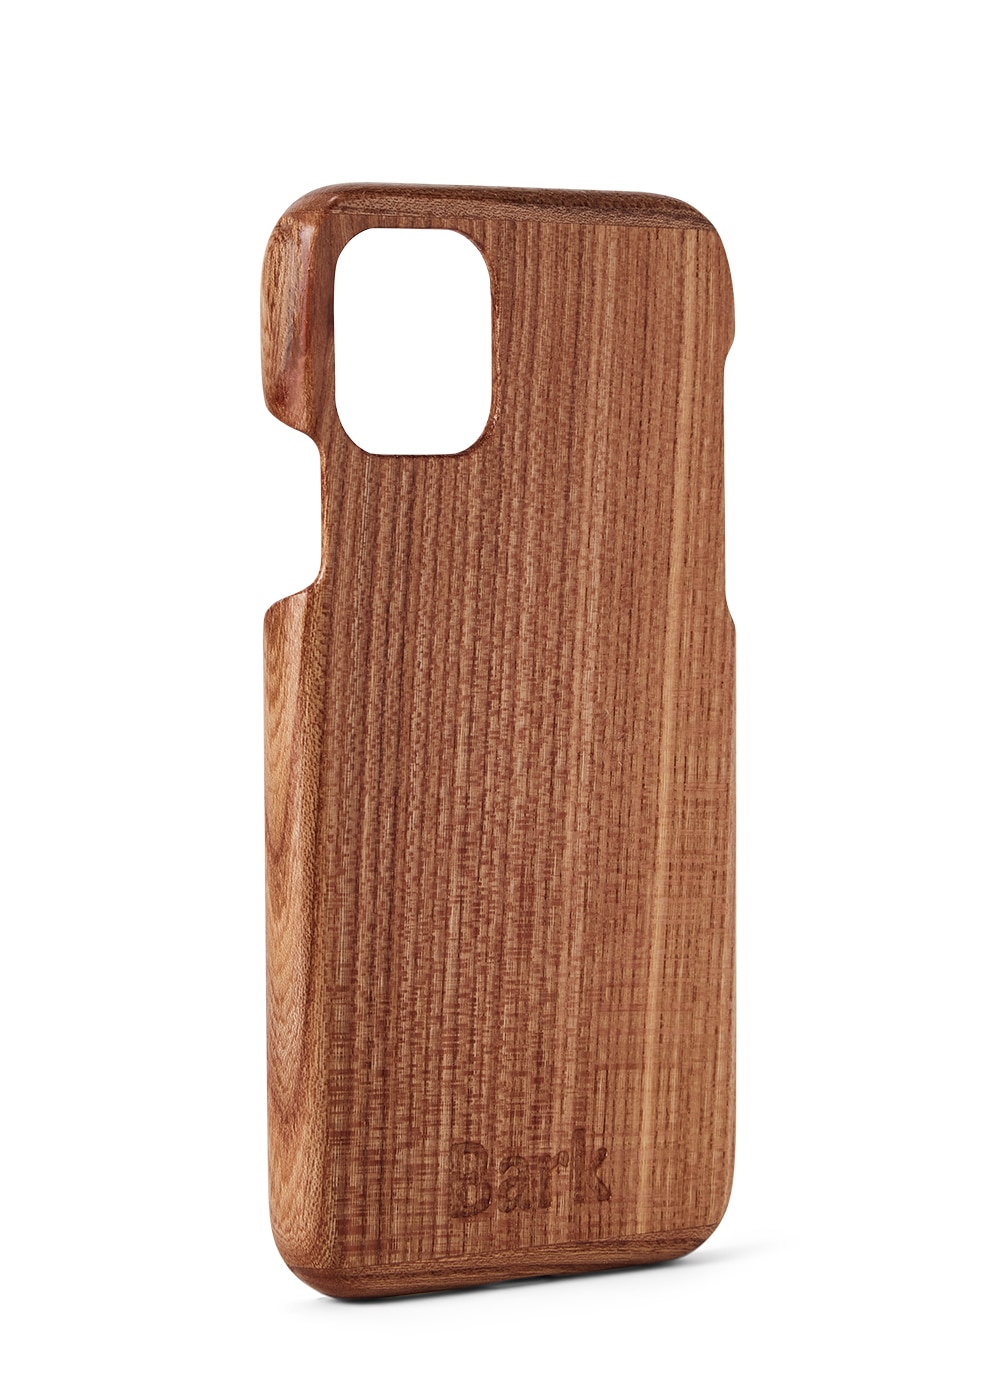 iPhone 11 coque en bois de feuillus suédois - Alm